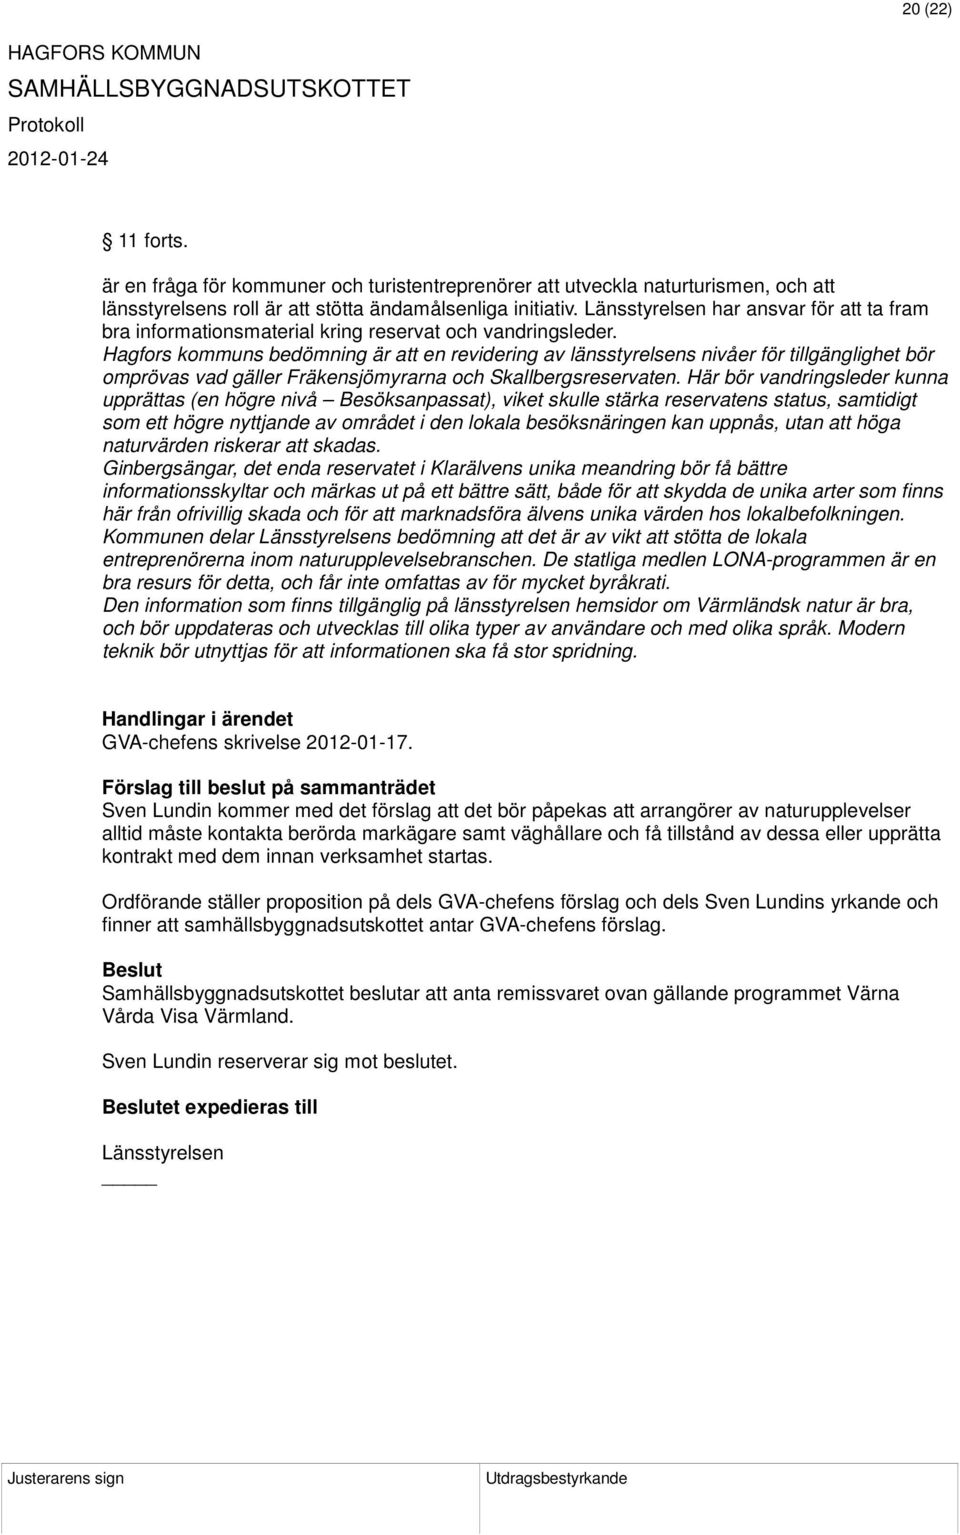 Hagfors kommuns bedömning är att en revidering av länsstyrelsens nivåer för tillgänglighet bör omprövas vad gäller Fräkensjömyrarna och Skallbergsreservaten.